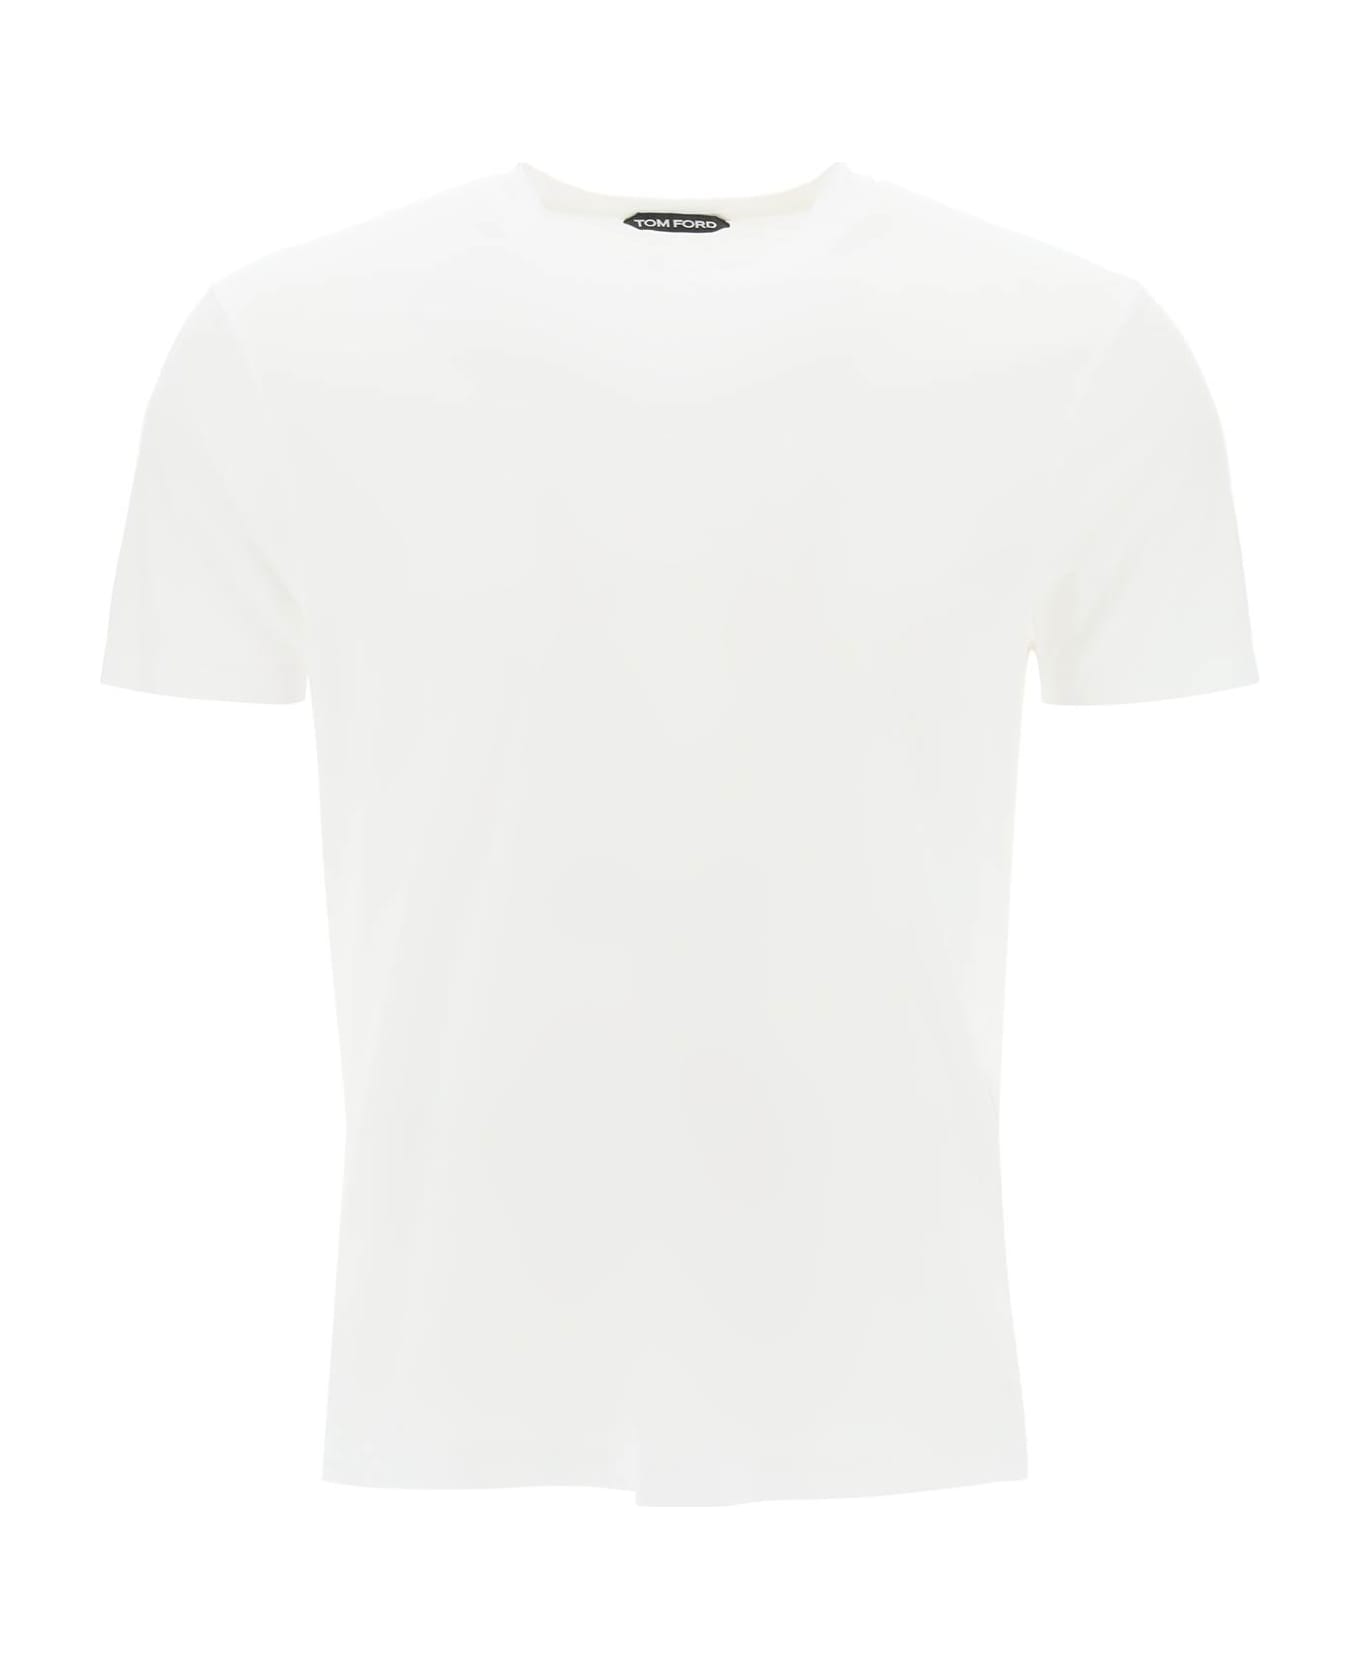 Tom Ford T-shirt - Cream シャツ